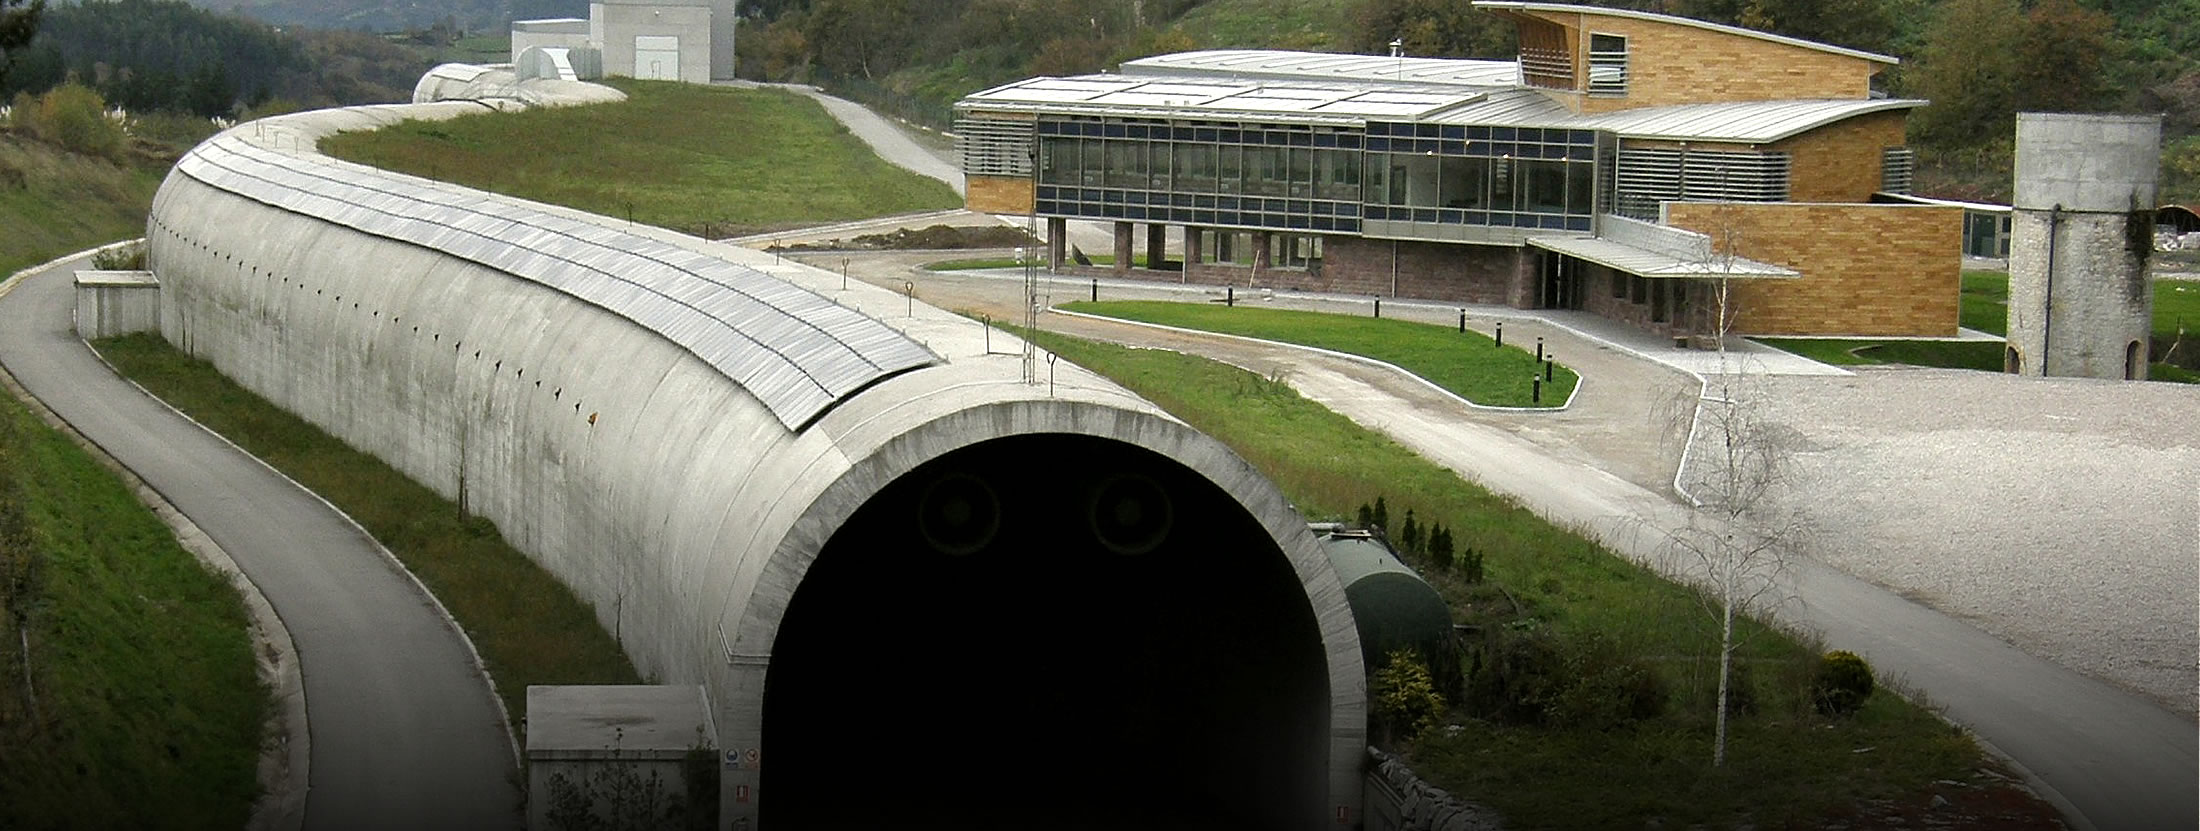 Test tunnel